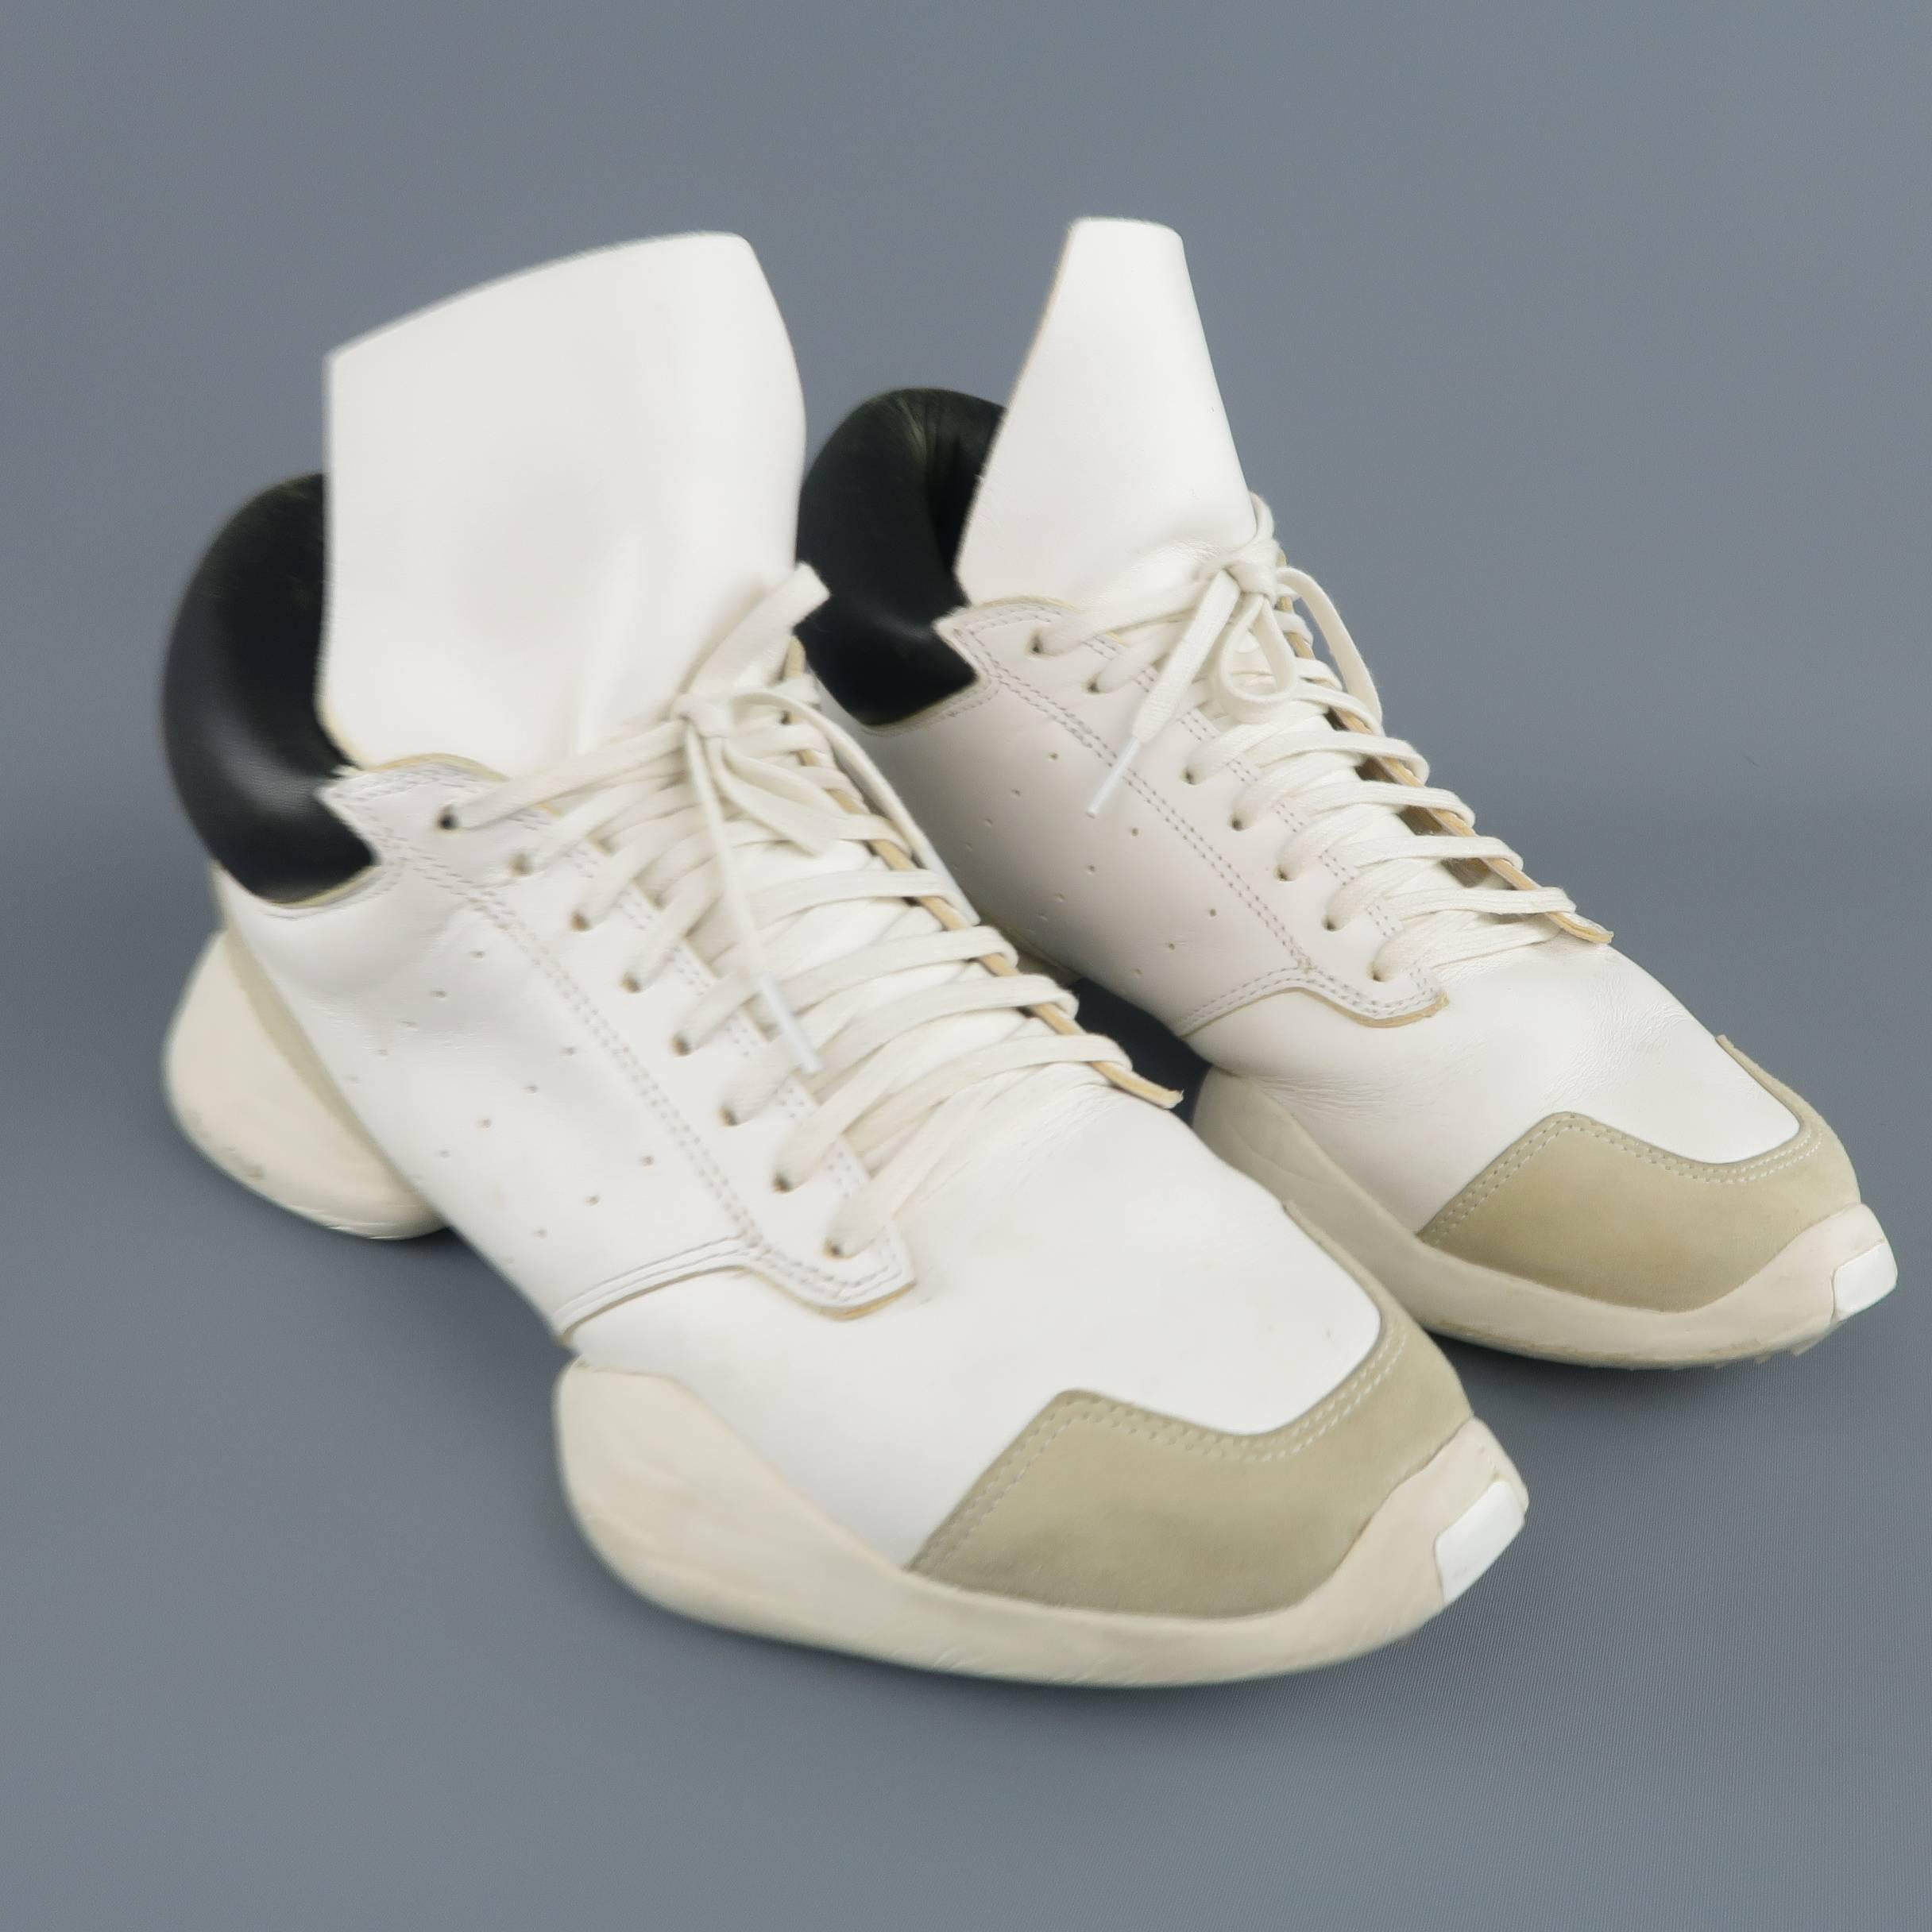 adidas split sole shoes